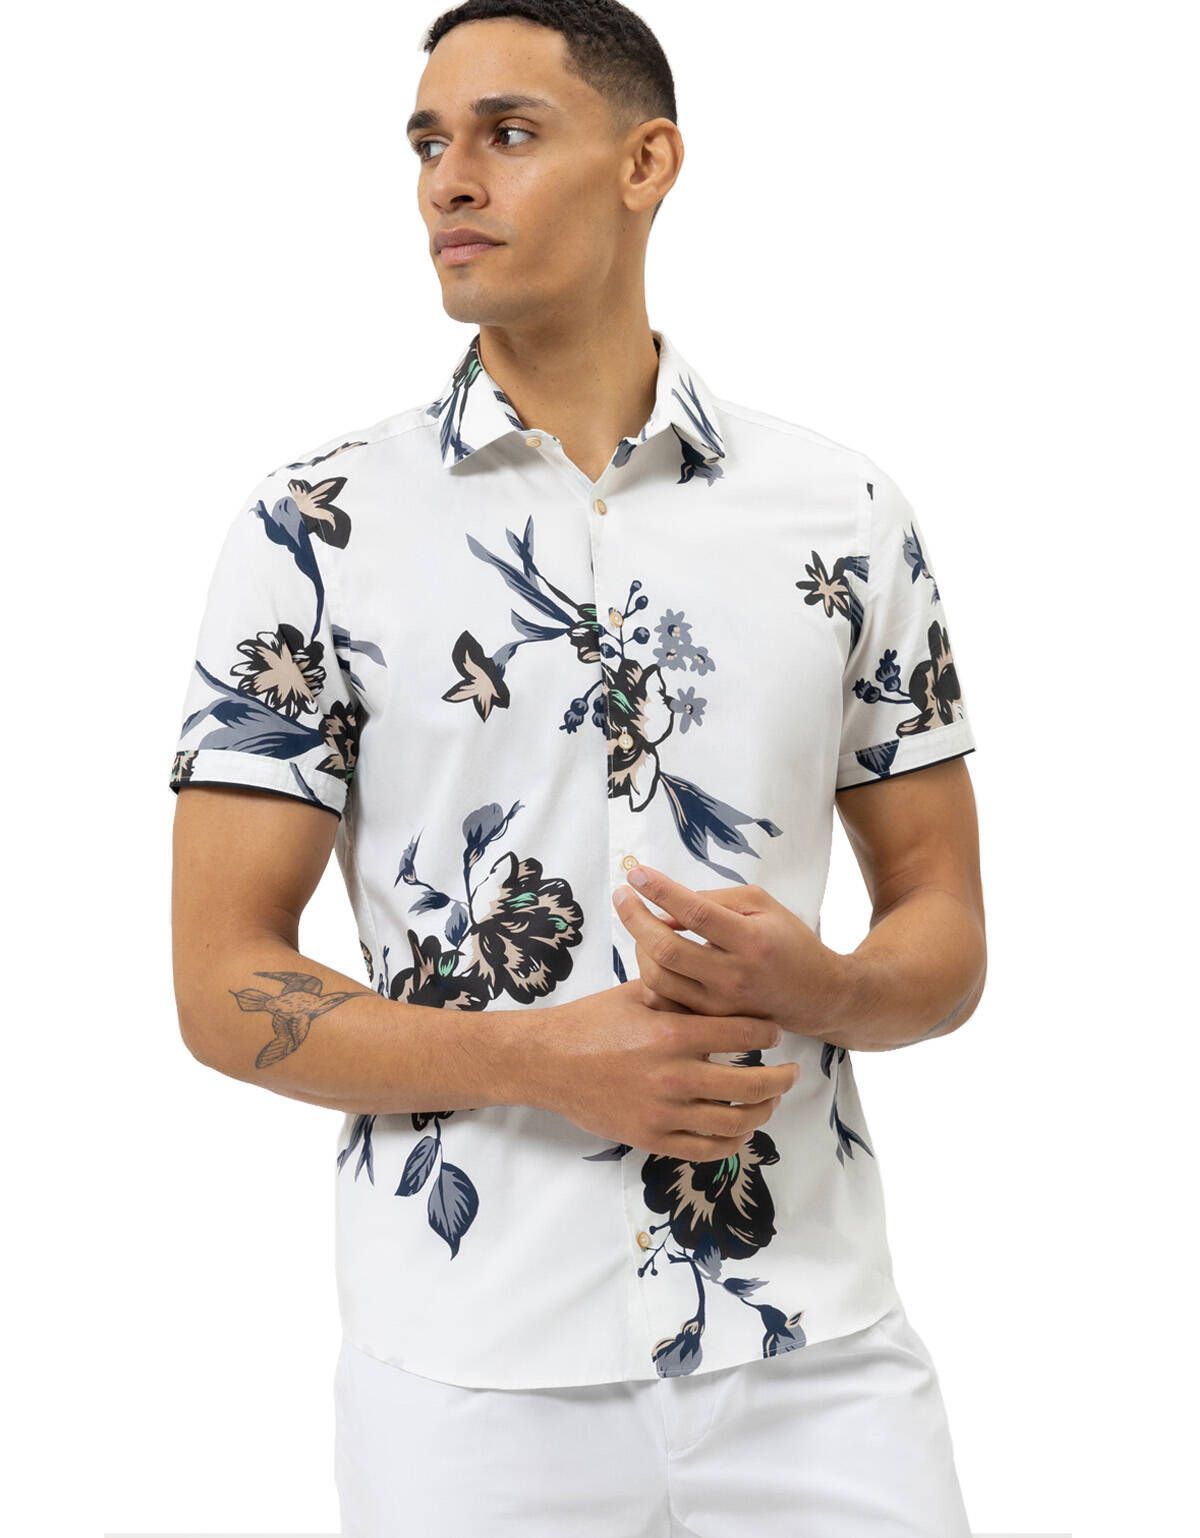 Рубашка мужская  OLYMP цветочный принт, body fit[Белый]